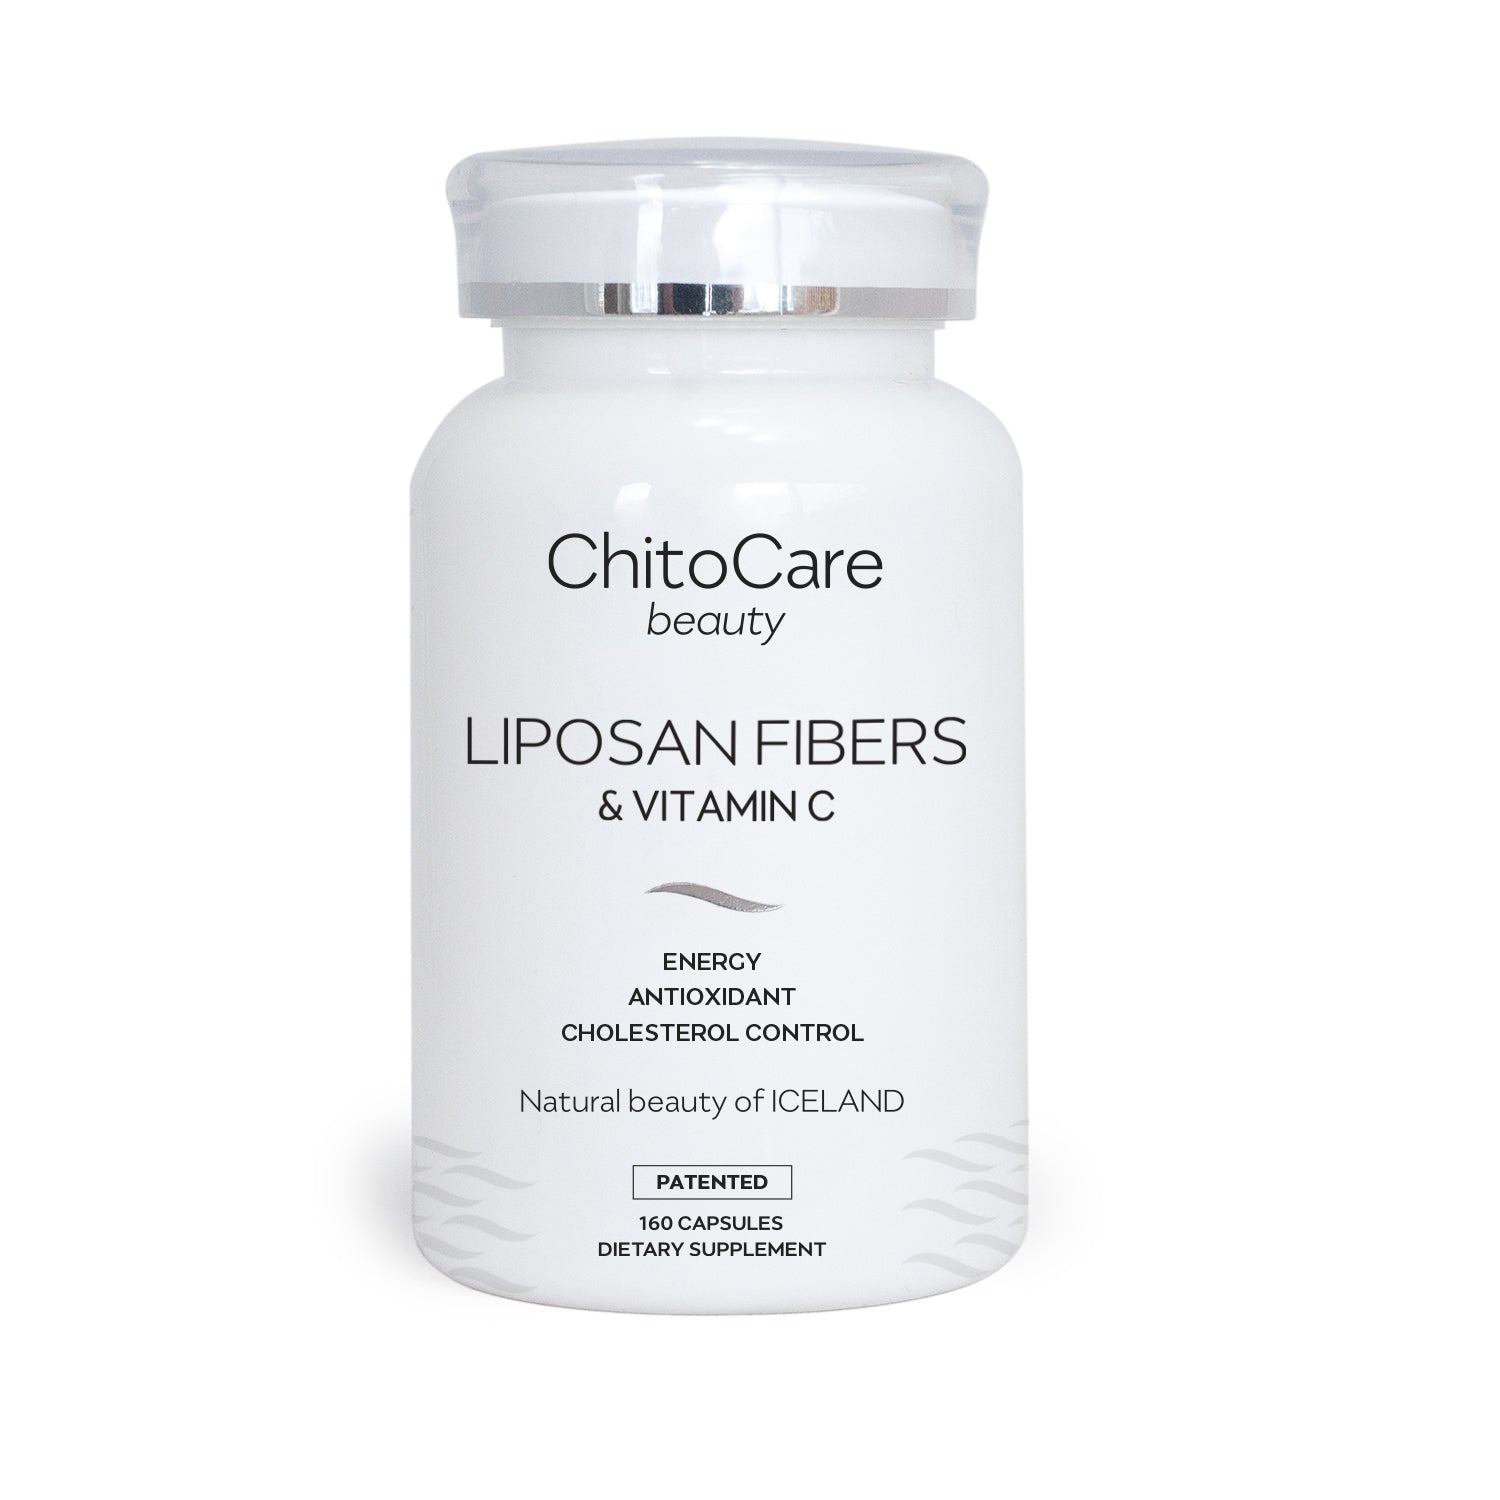 LipoSan Fibers & Vitamin C